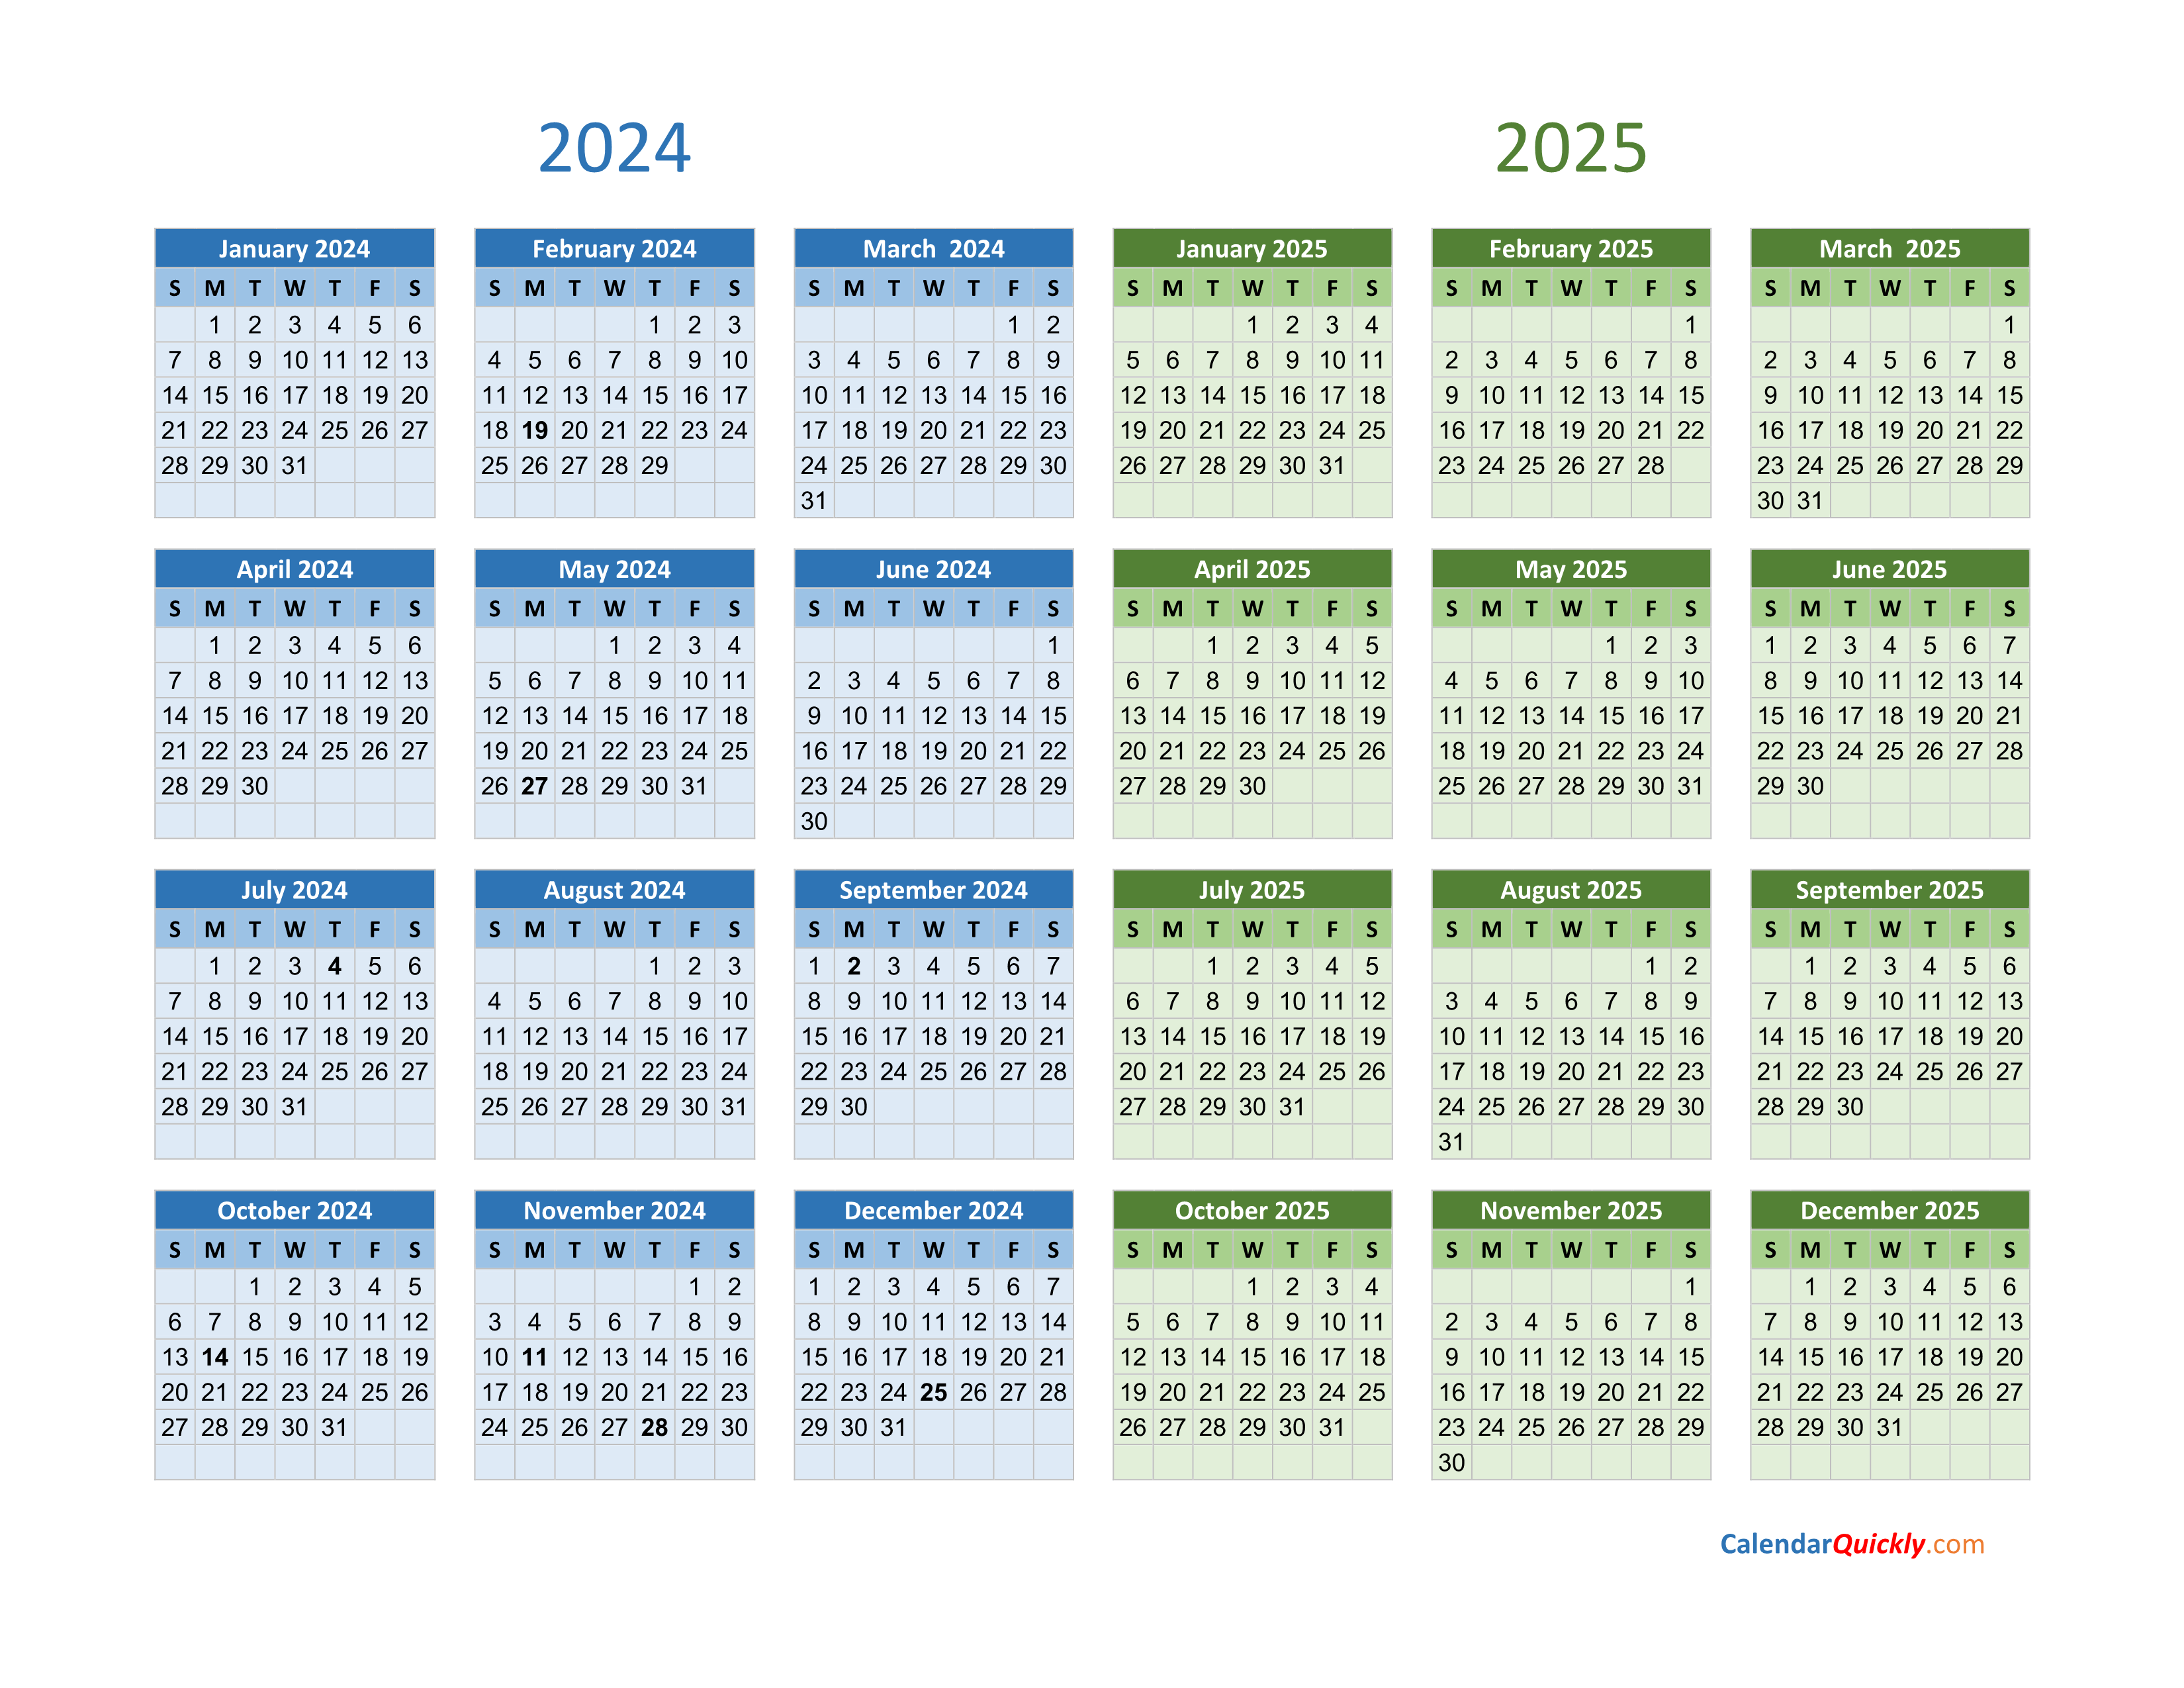 2024 And 2025 Calendar | Calendar Quickly pertaining to Free Printable Calendar 2024-2025